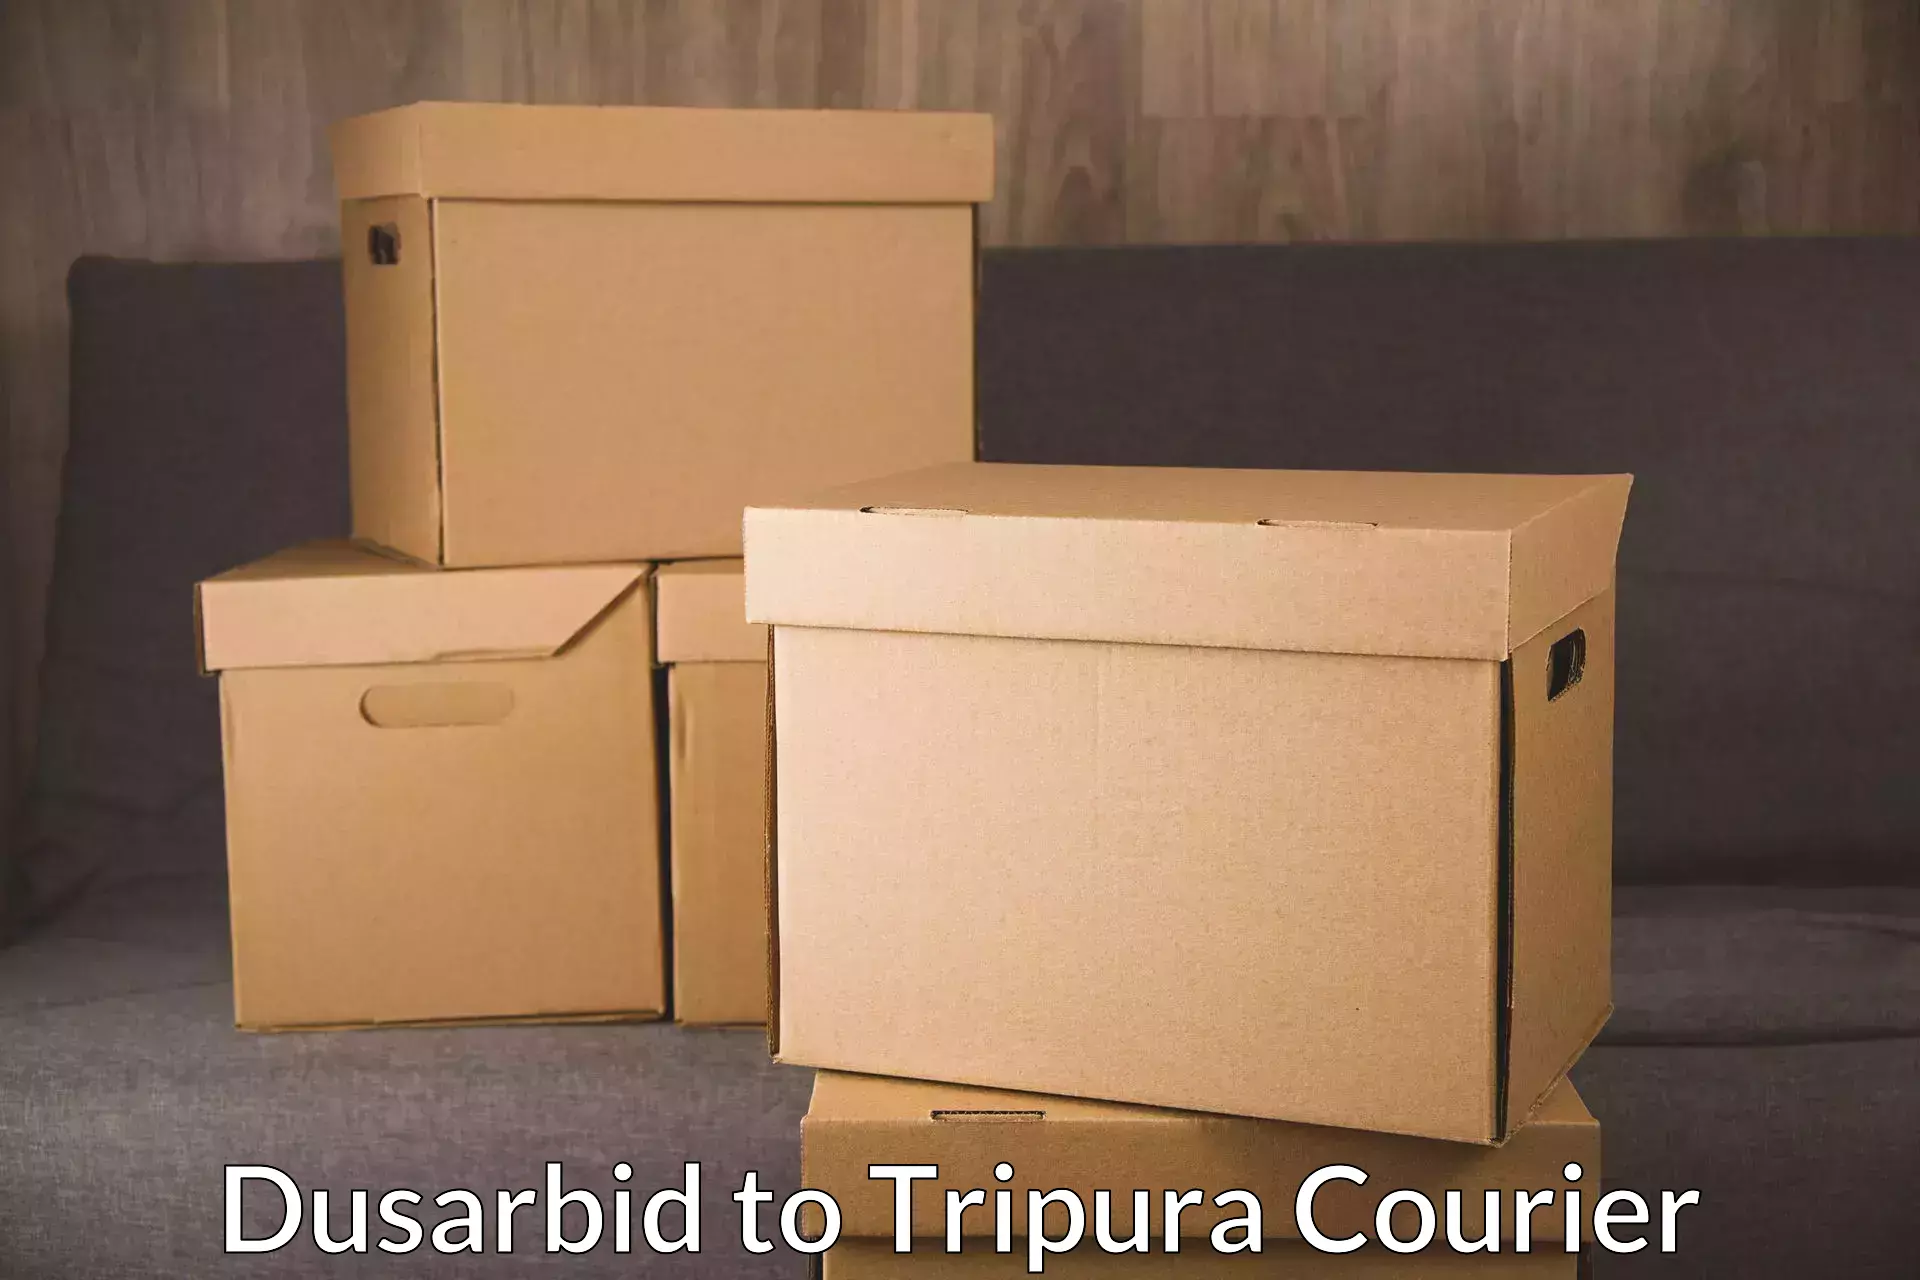 Door-to-door freight service Dusarbid to Udaipur Tripura